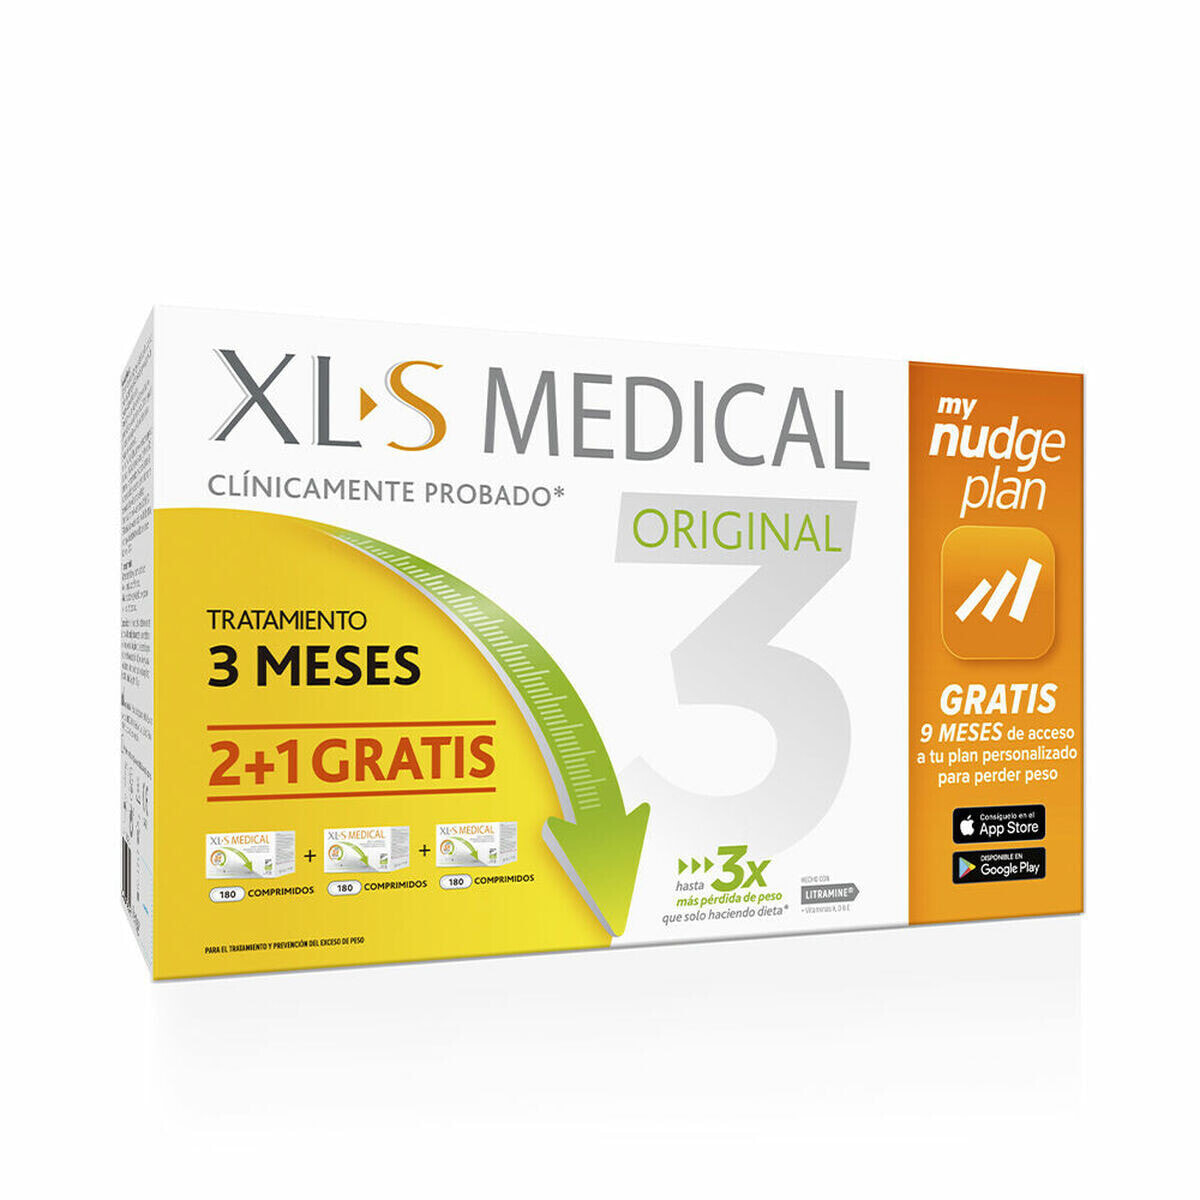 Xls Medical 7pro. Xls Medical купить. Xls Medical цена. Витамины xls отзывы. Купить xl s